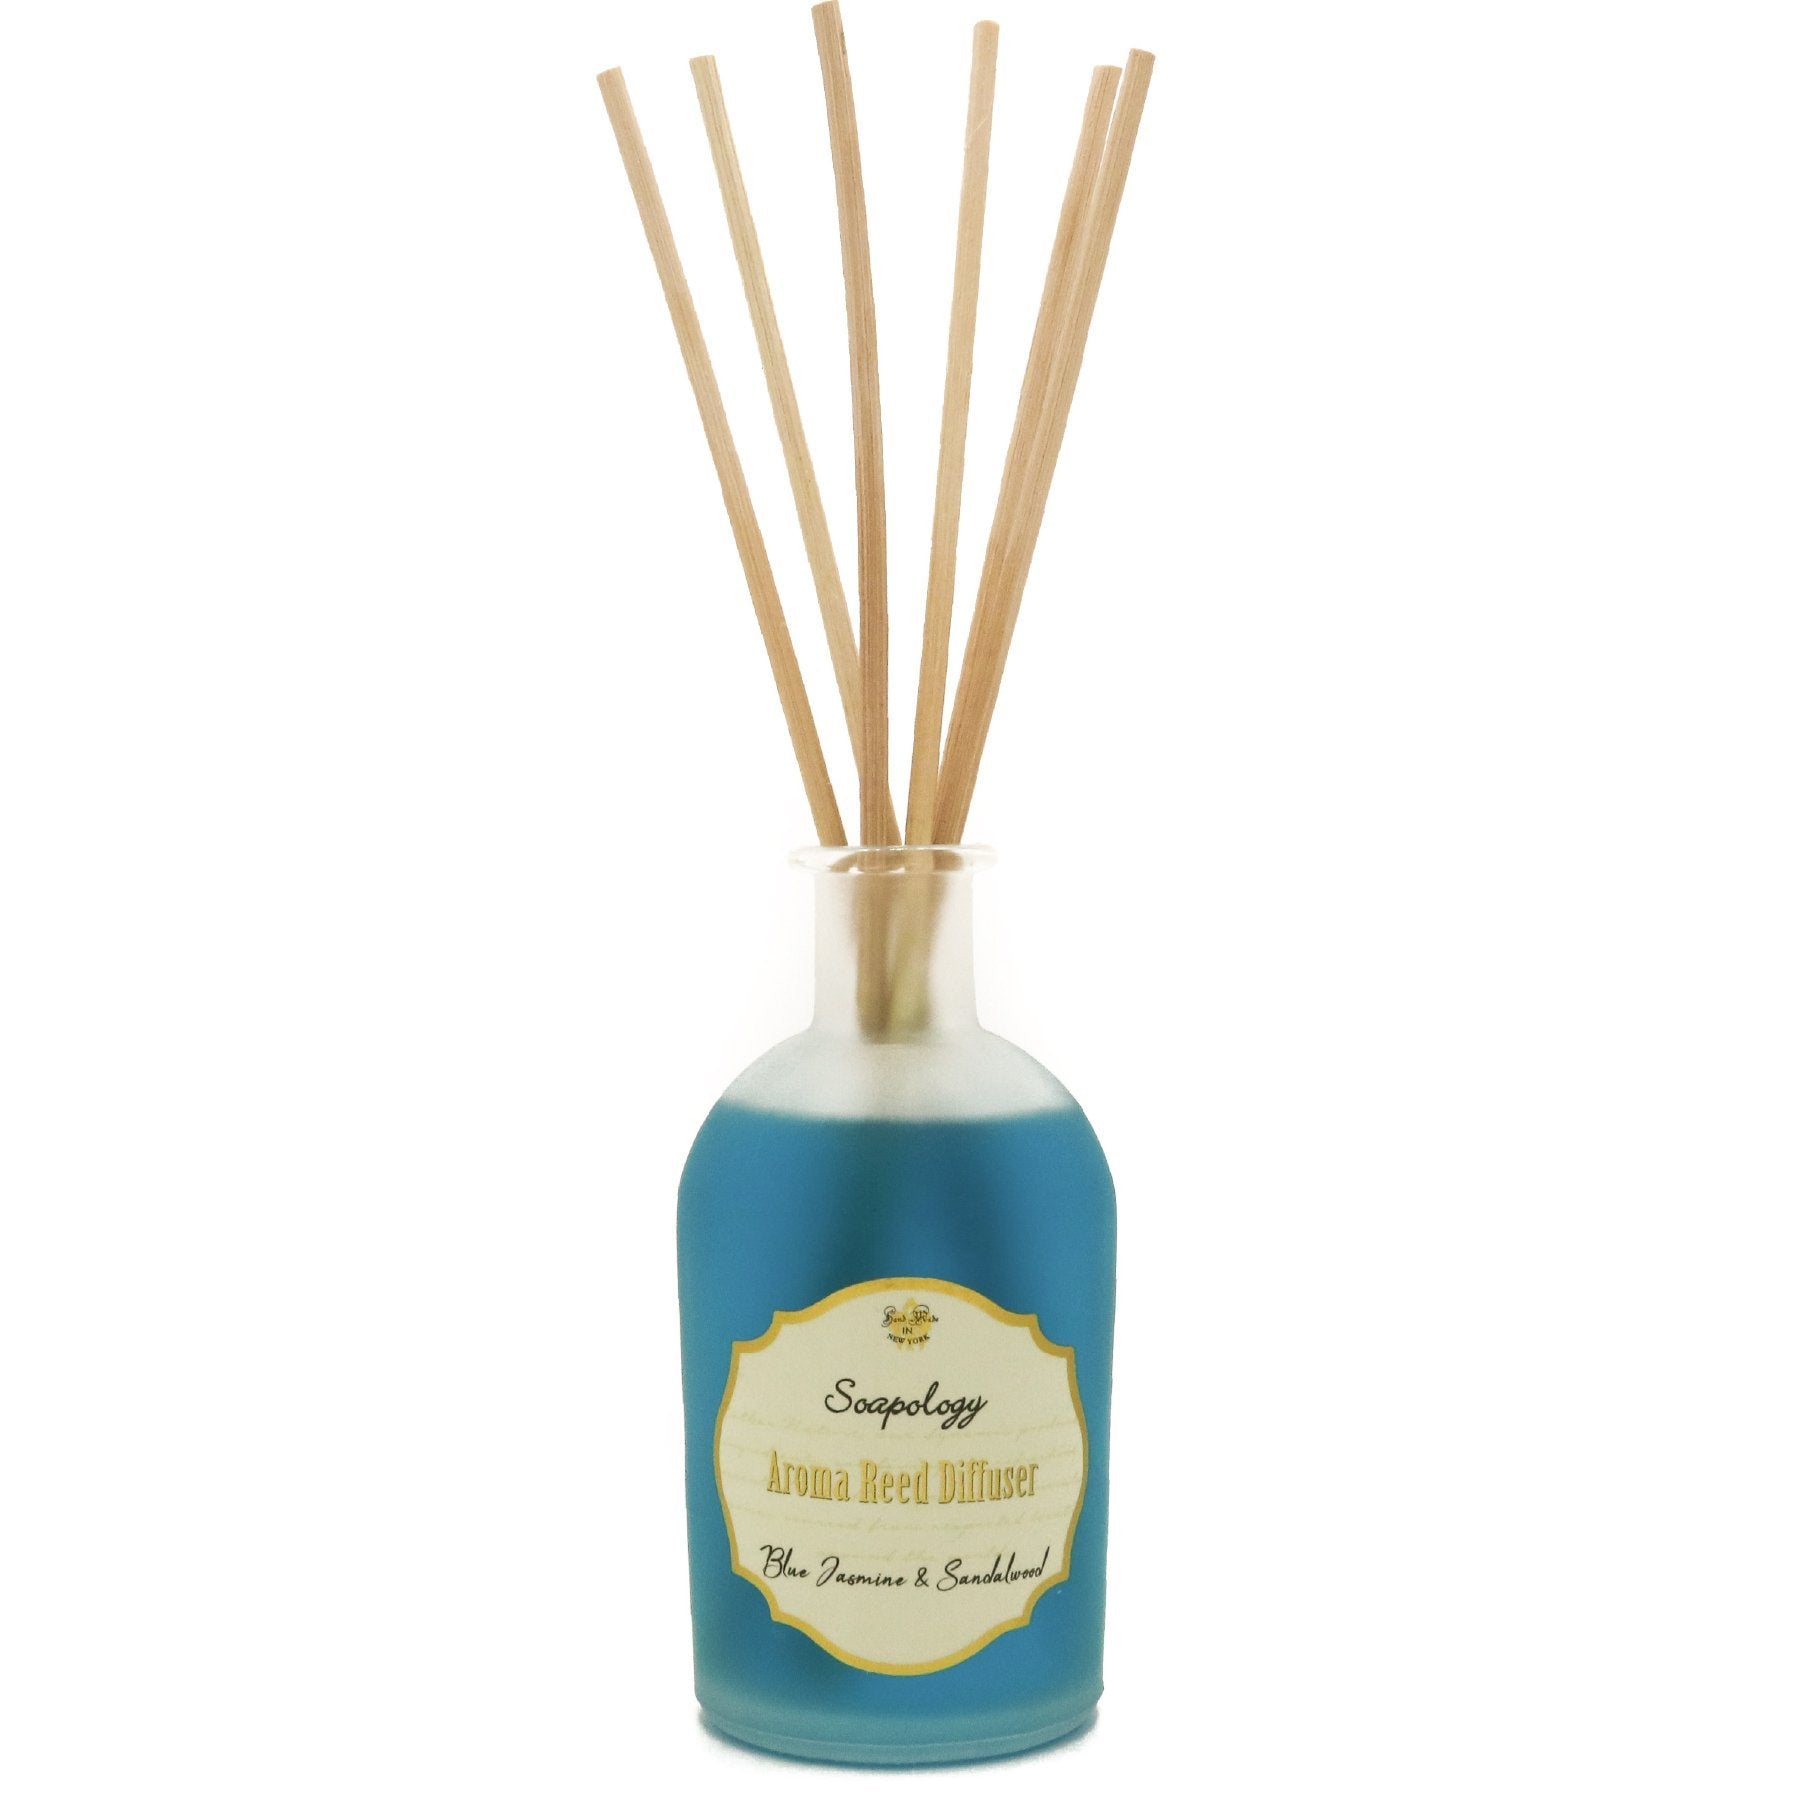 Aroma Reed Diffuser - Blue Jasmine & Sandalwood